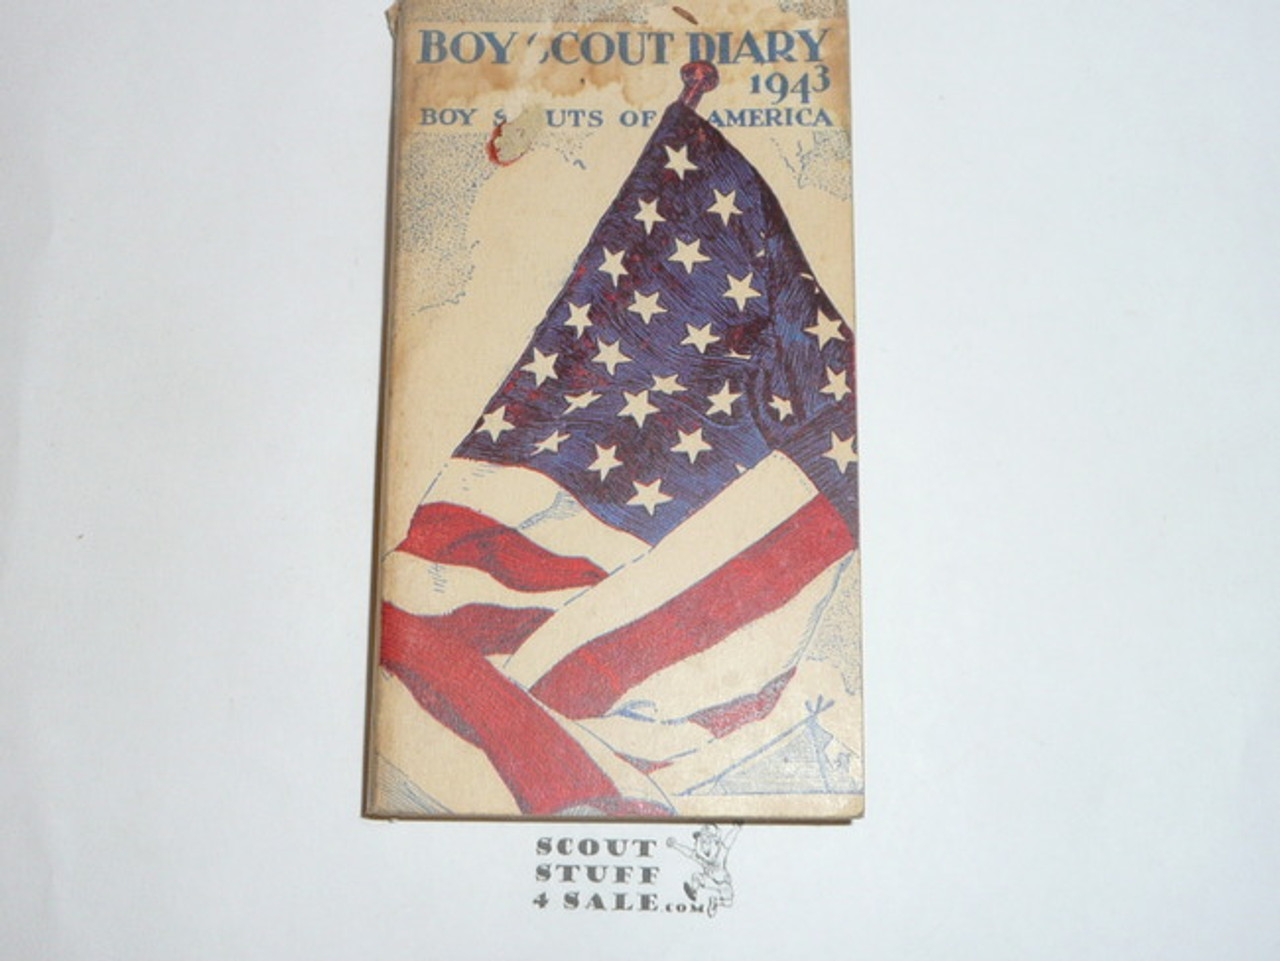 1943 Boy Scout Diary